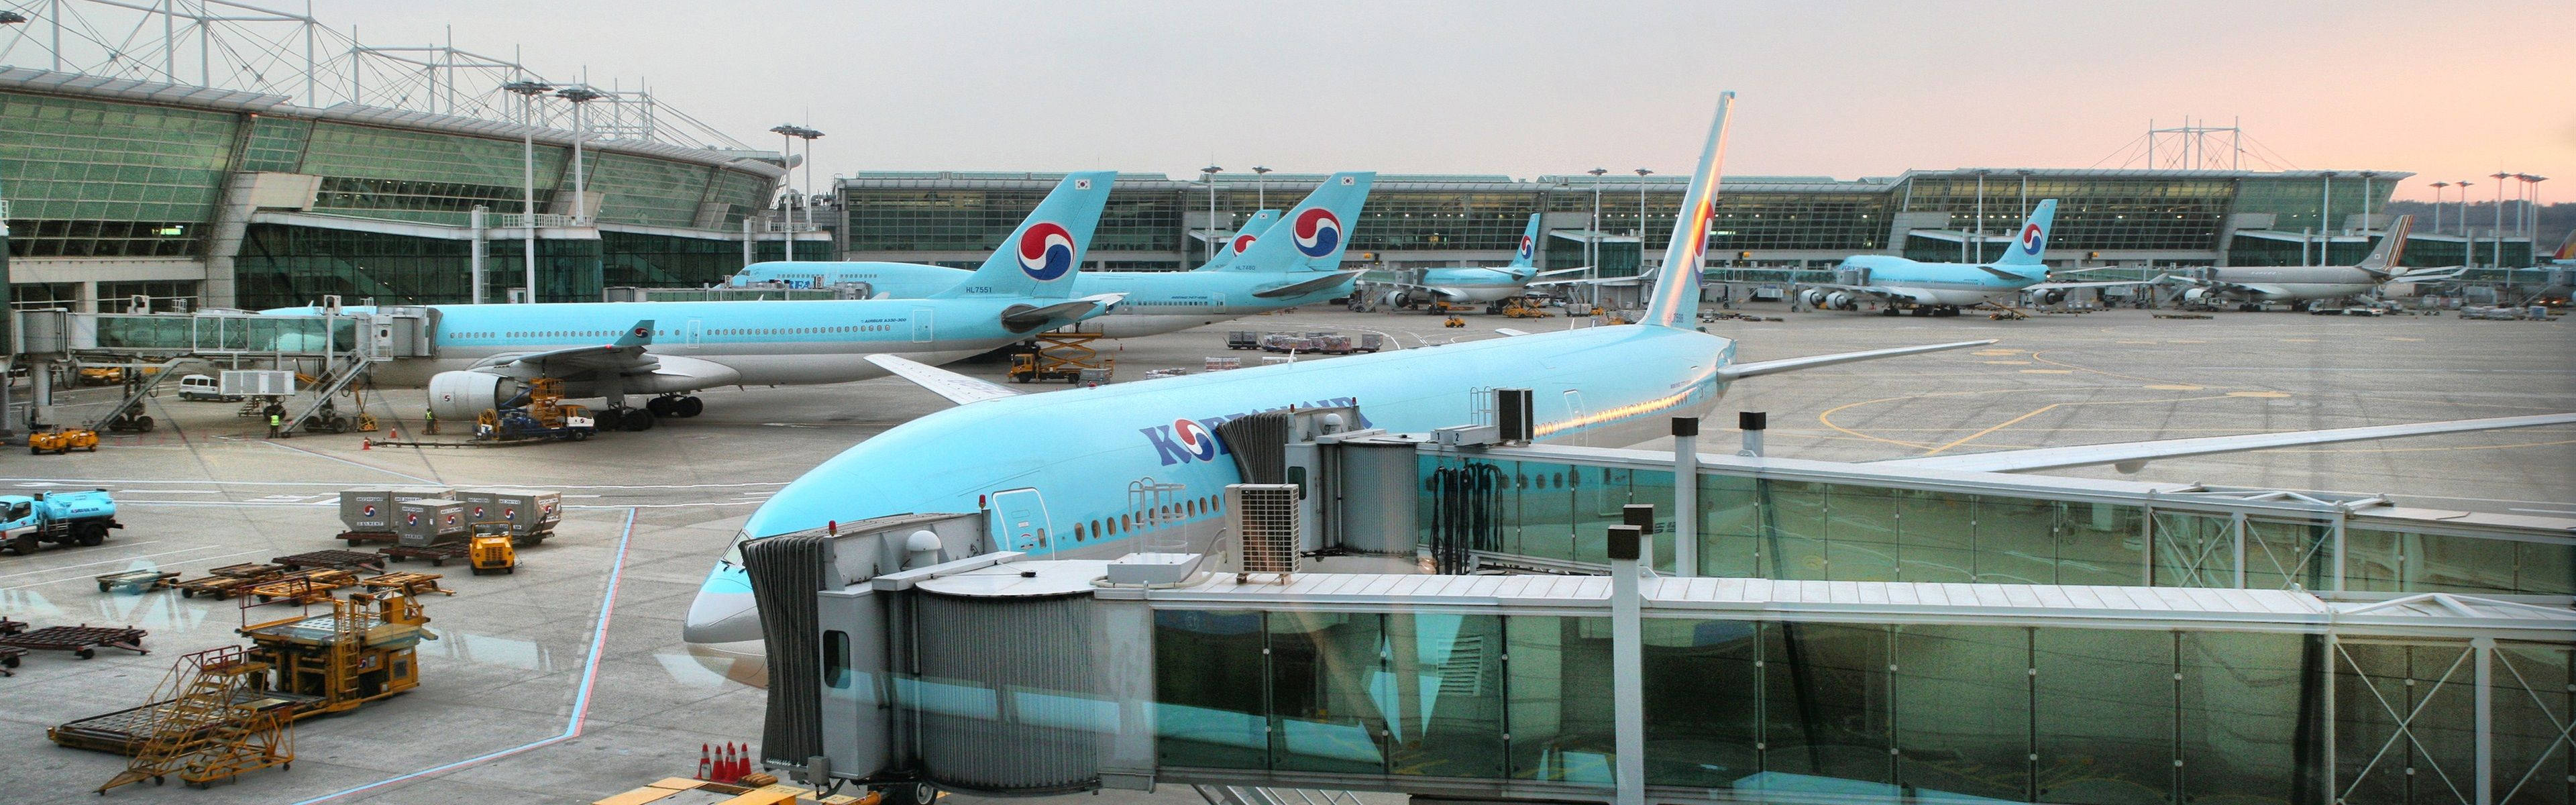 Koreanskaflygflottan På Incheon International Airport. Wallpaper